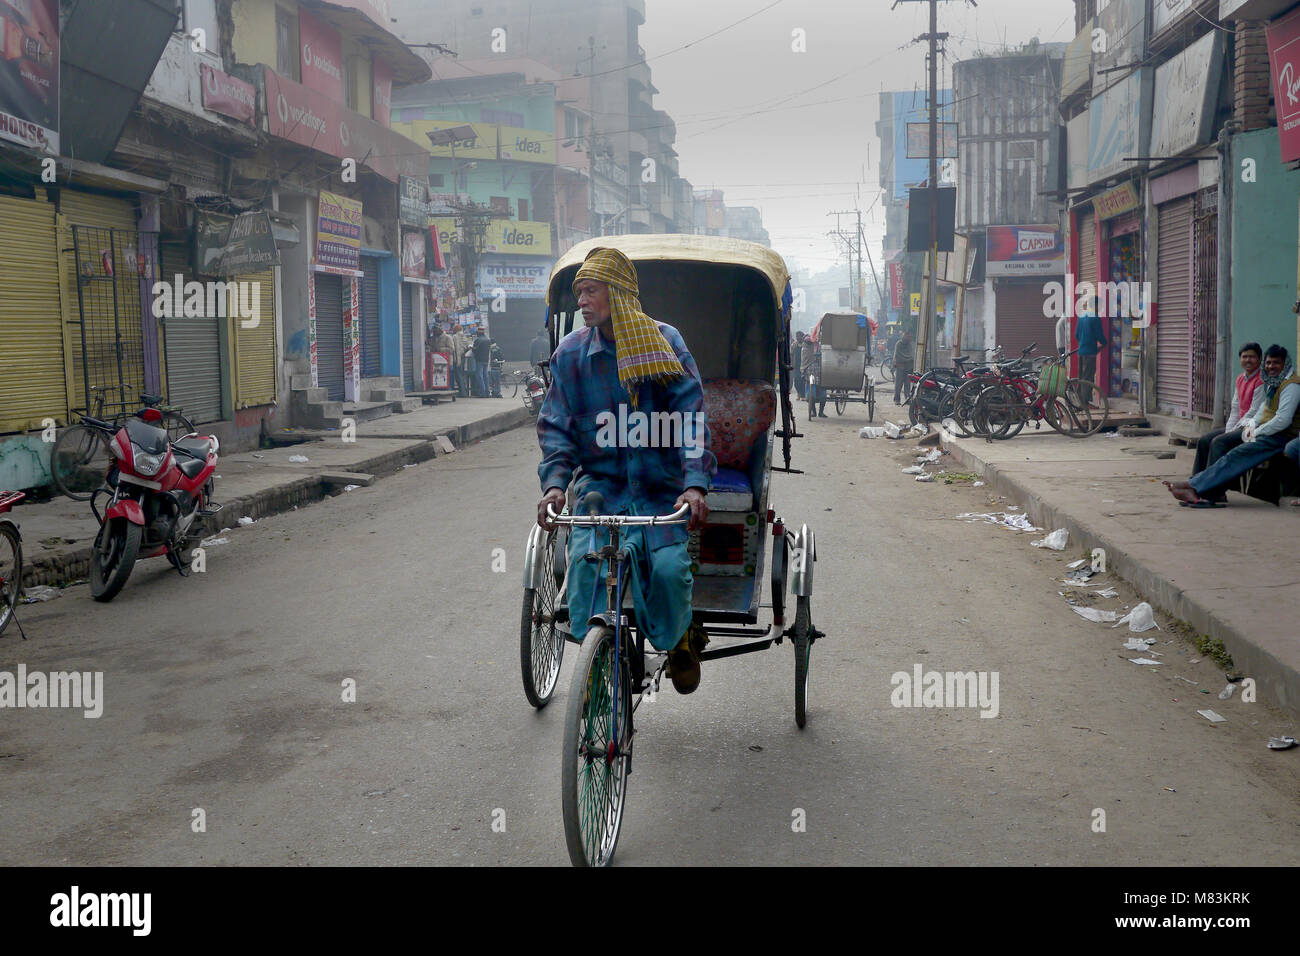 Homme conduisant un vélo à trois roues en Inde Banque D'Images